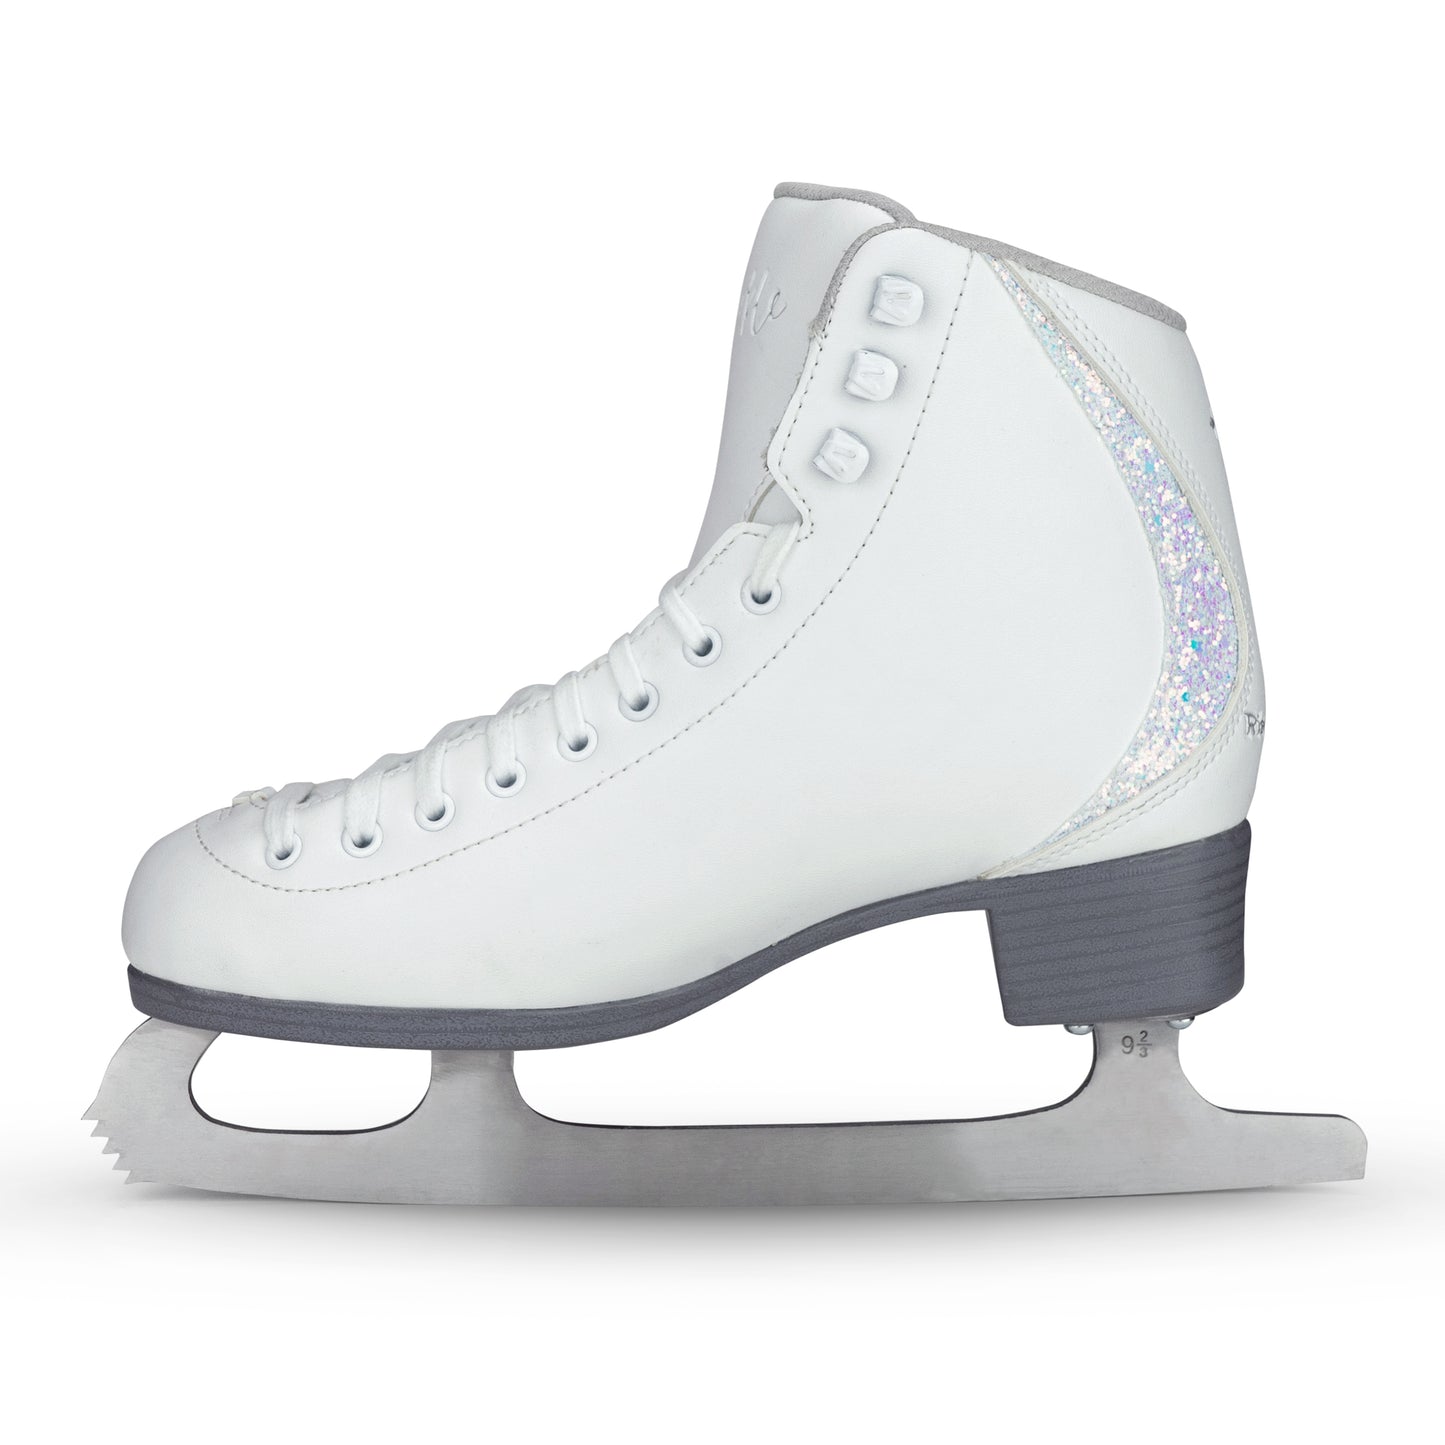 New for 2023! Riedell Sparkle Beginner Figure Skate Set